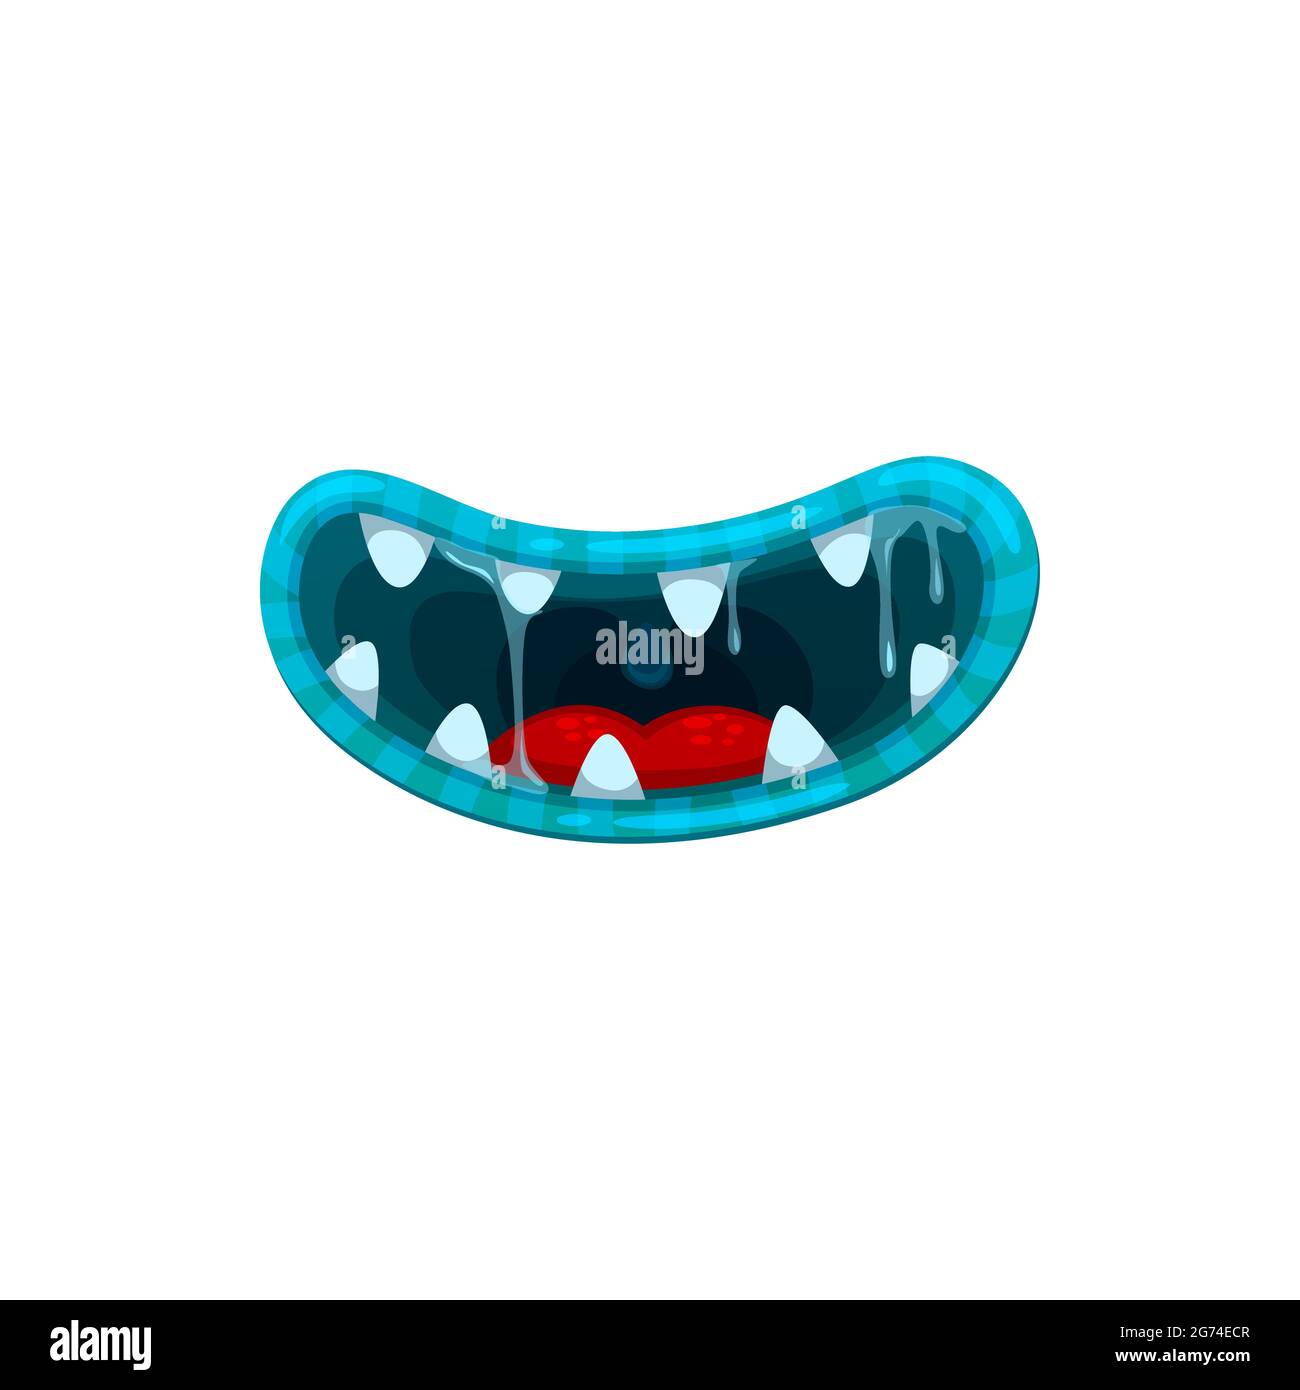 Bouche de monstre, mâchoires de sourire de vecteur avec des dents acérées et des lèvres bleues désagréables avec de la salive de gooey goutte à goutte. Halloween créature dégoûtante sourire bouche d'extraterrestre est Illustration de Vecteur